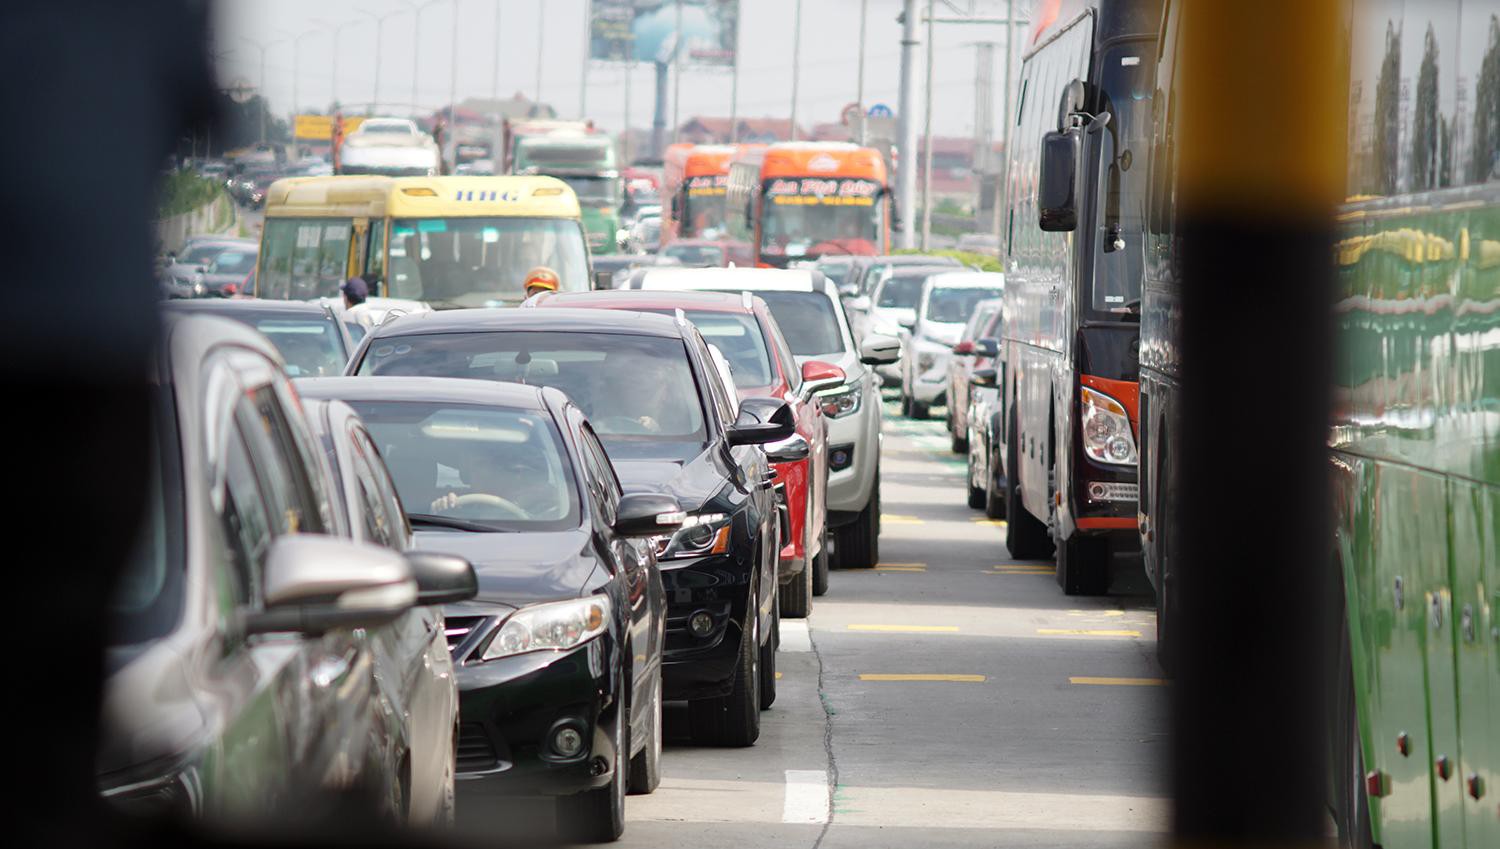 Ô tô va chạm trước trạm thu phí khiến hàng nghìn phương tiện ‘bò’ trên đường - Ảnh 6.